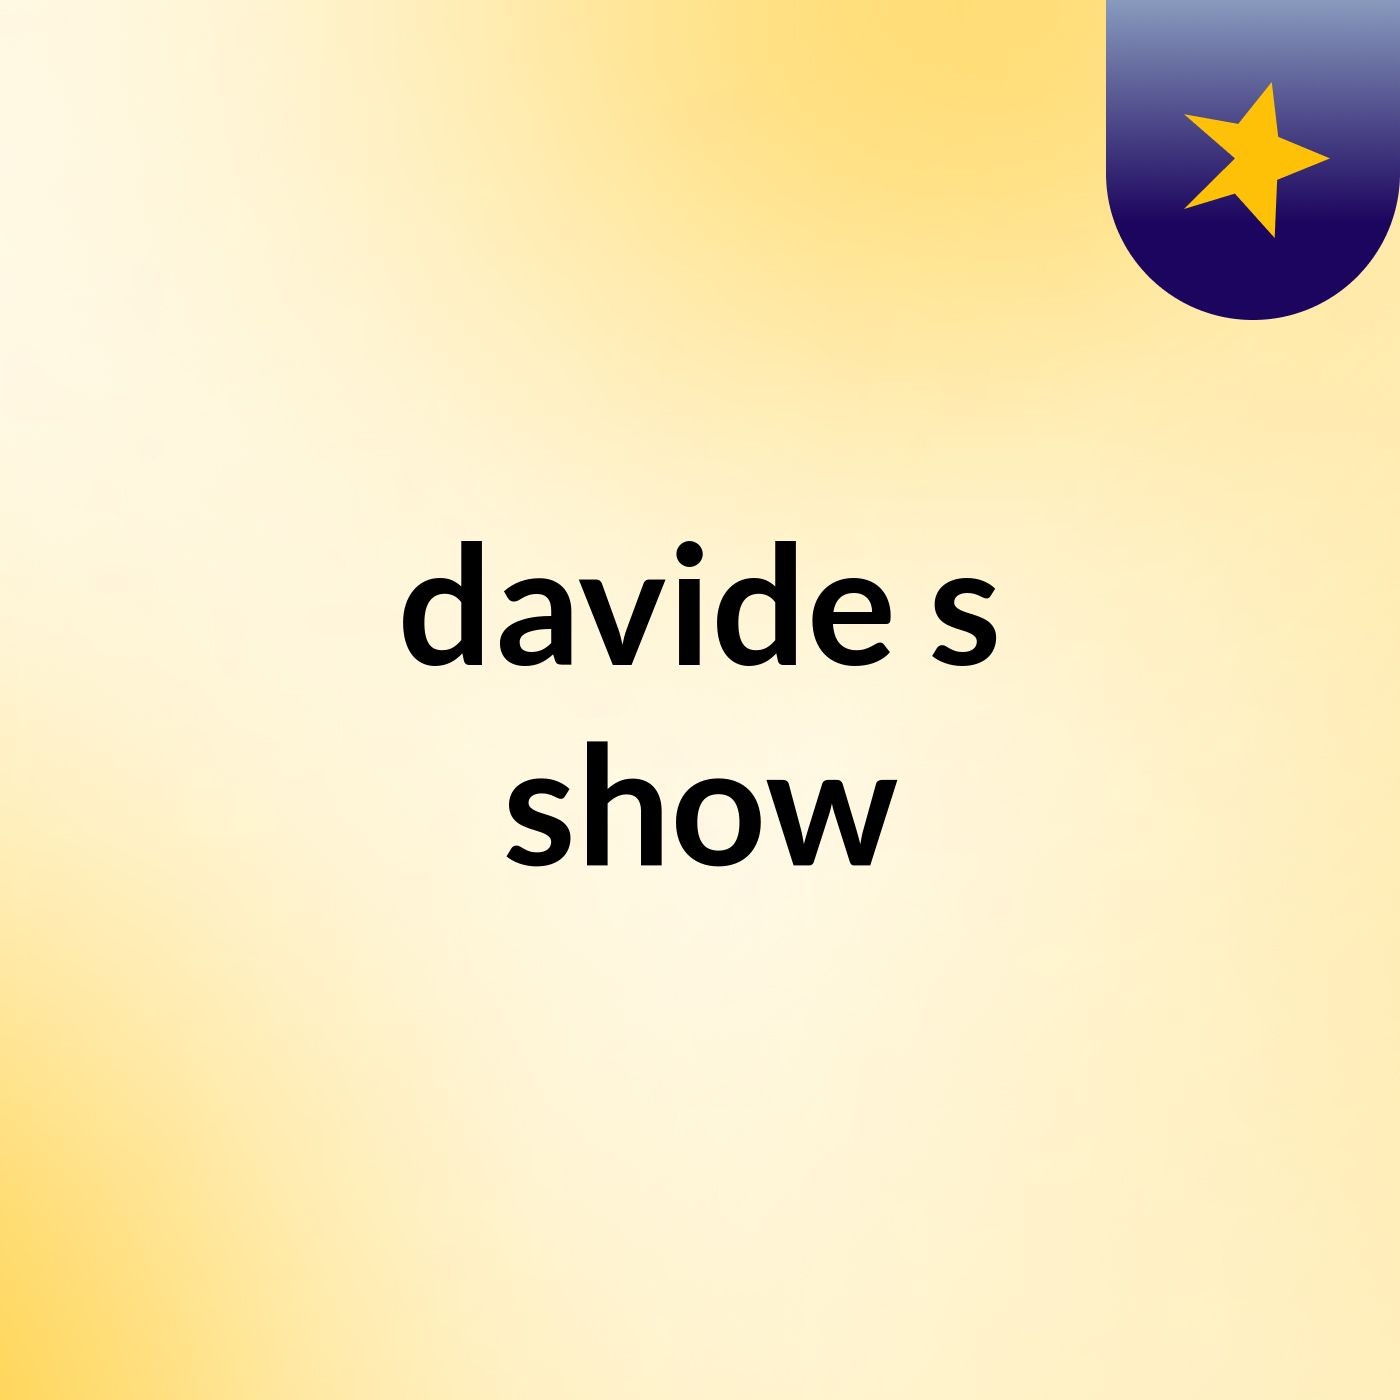 davide's show